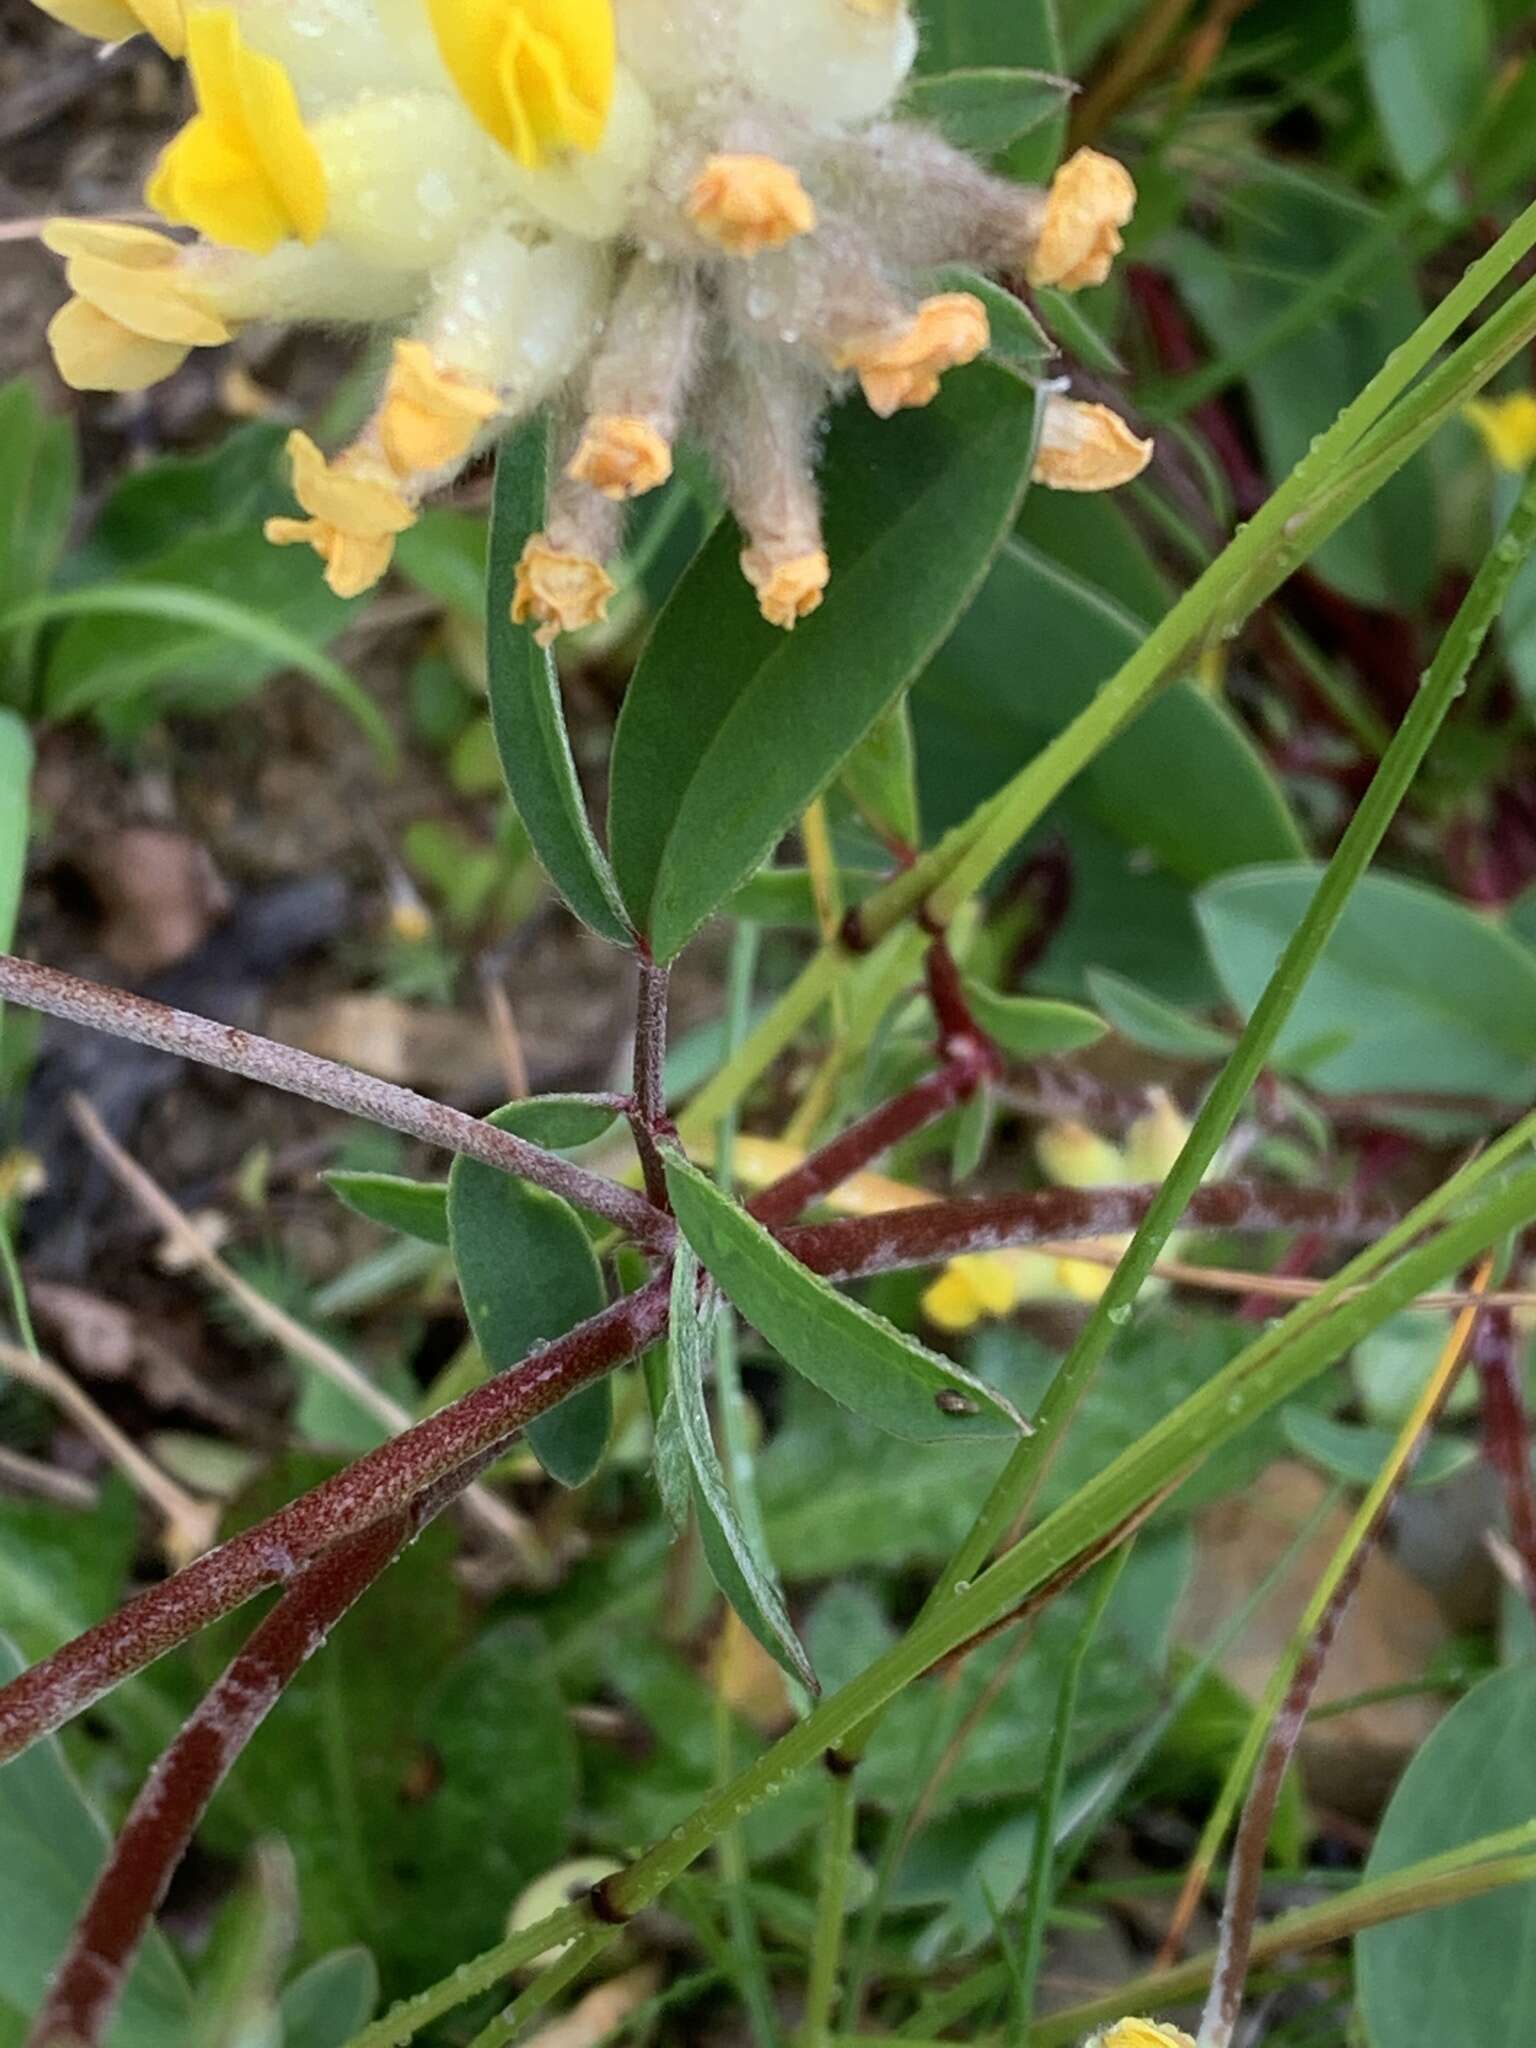 Image of Anthyllis vulneraria subsp. alpestris (Hegetschw.) Asch. & Graebn.